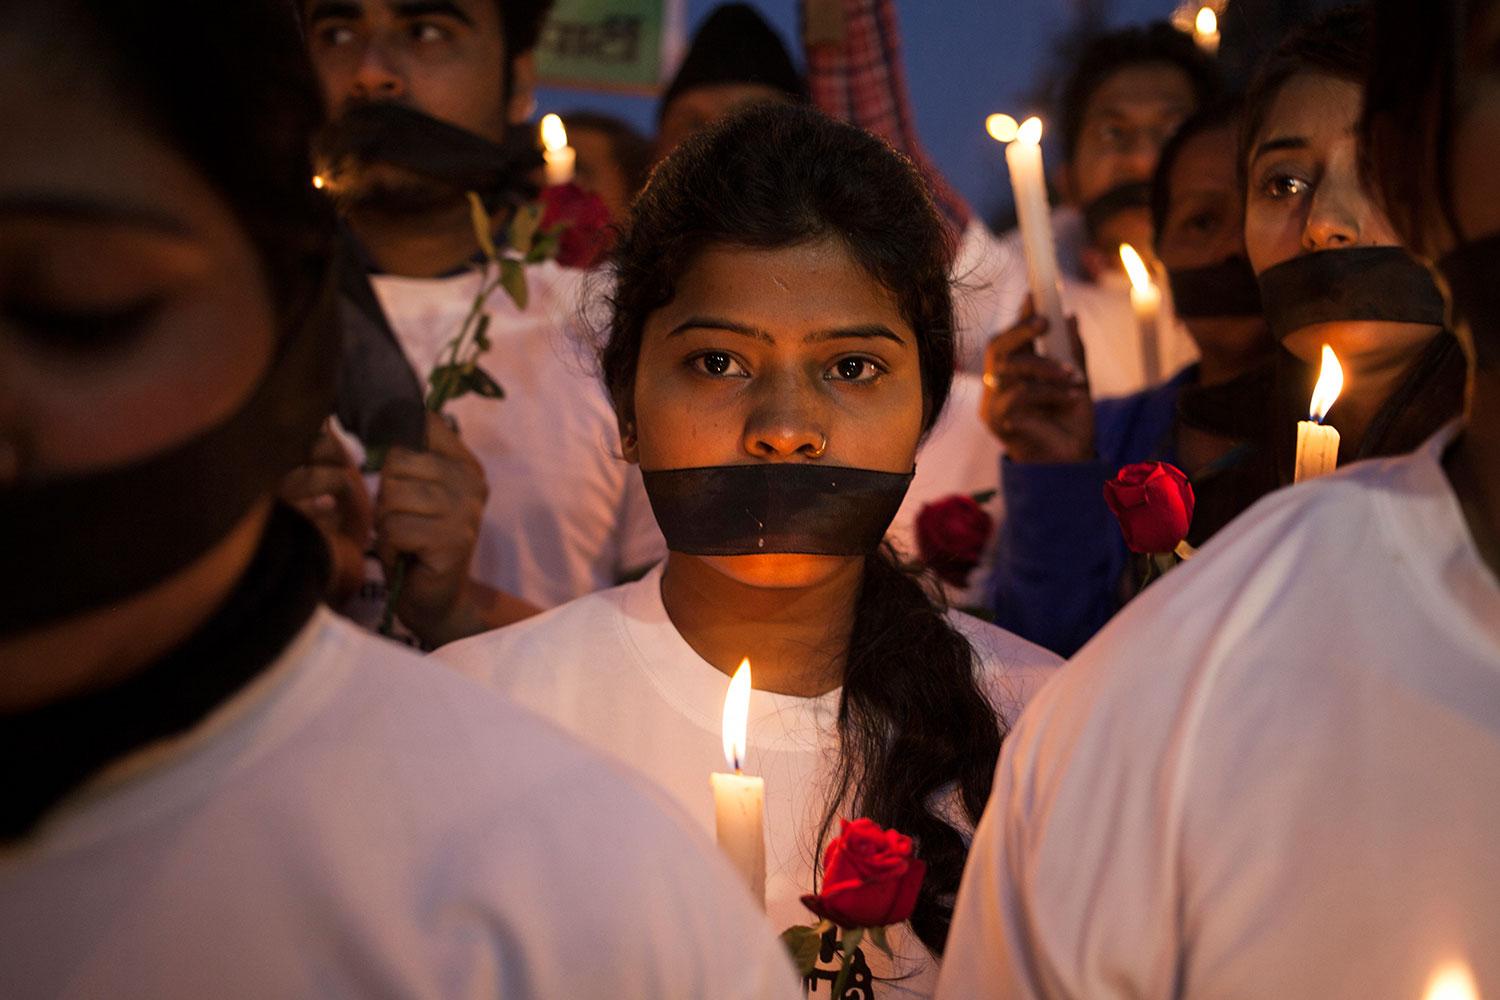 Omfattade protester har ägt rum i Indien sedan en kvinna dog efter att ha blivit utsatt för en brutal gängvåldtäkt på en buss i huvudstaden New Delhi 2012.